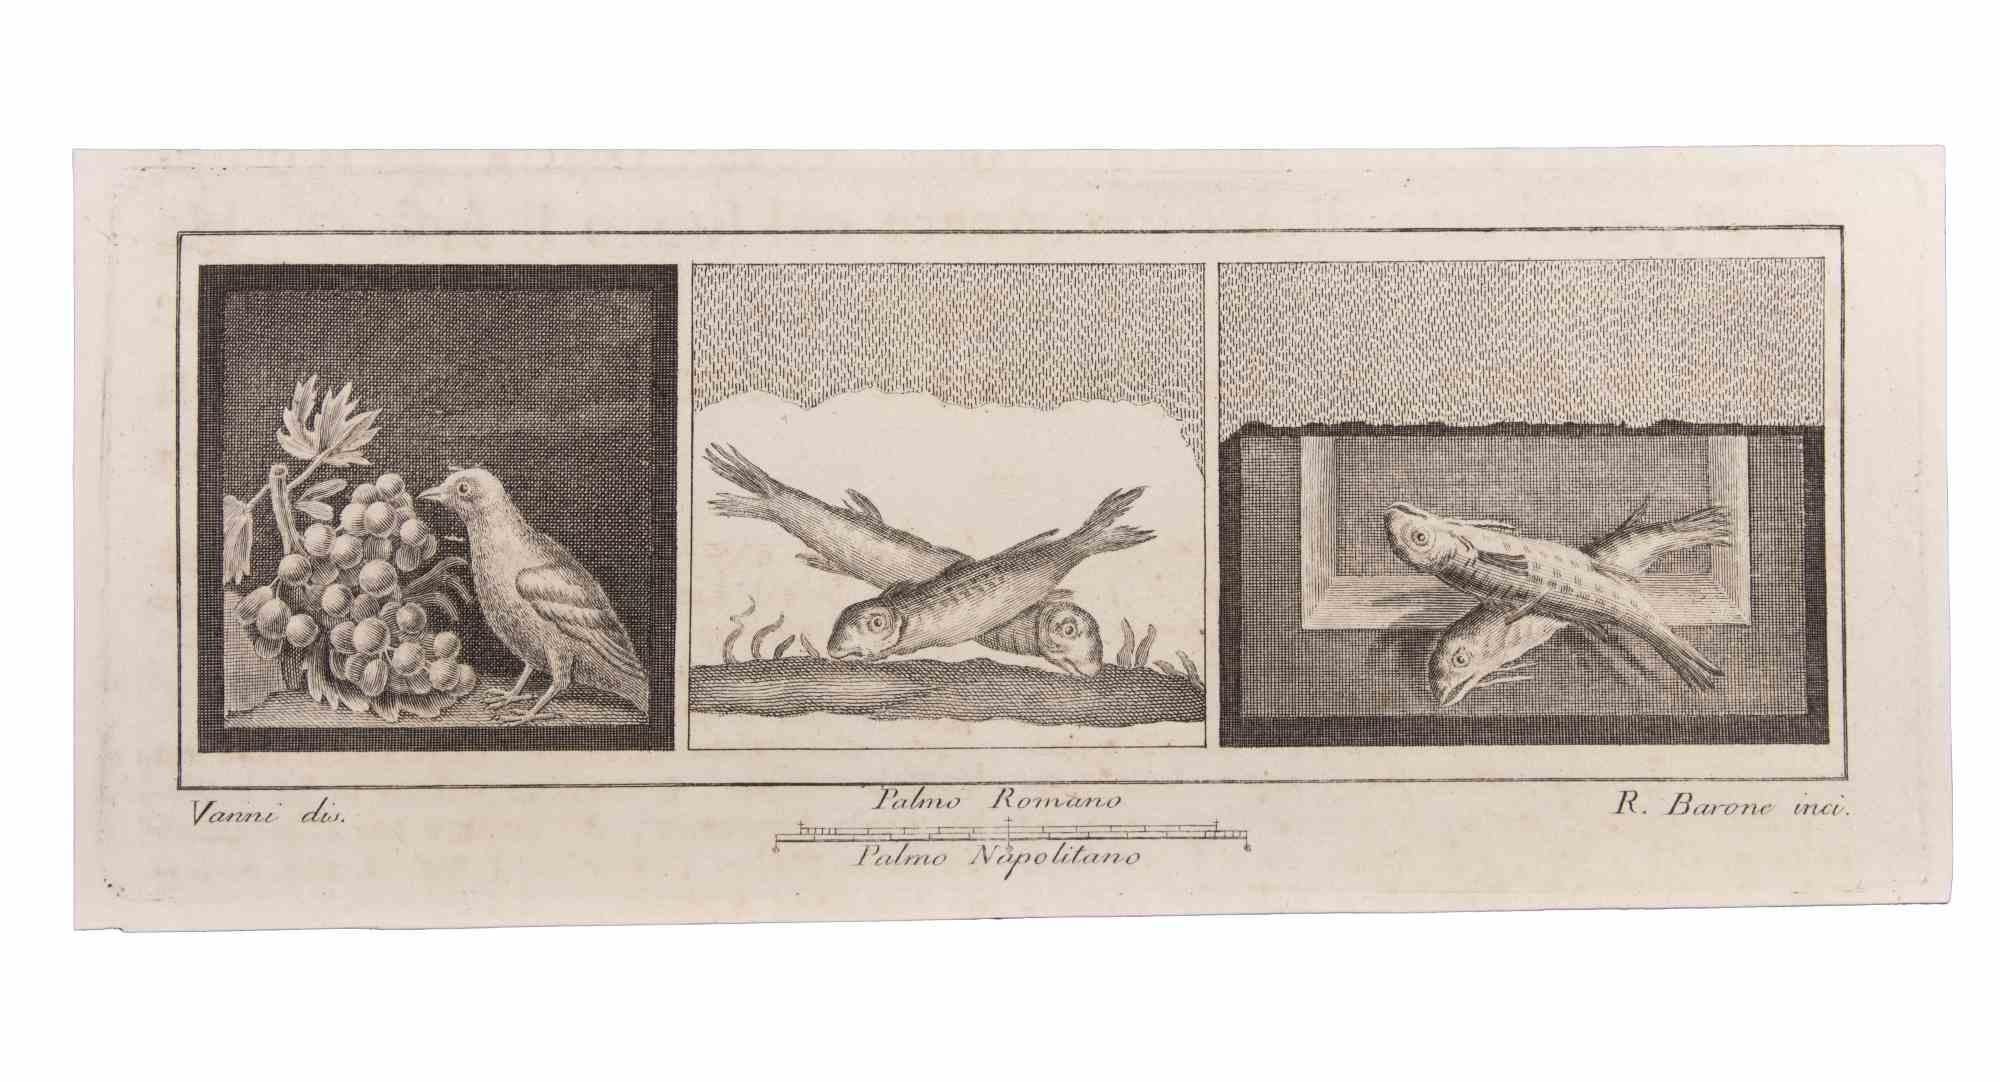 Décoration avec des animaux est une gravure réalisée par Raffaele Barone (18e siècle).

La gravure appartient à la suite d'estampes "Antiquités d'Herculanum exposées" (titre original : "Le Antichità di Ercolano Esposte"), un volume de huit gravures